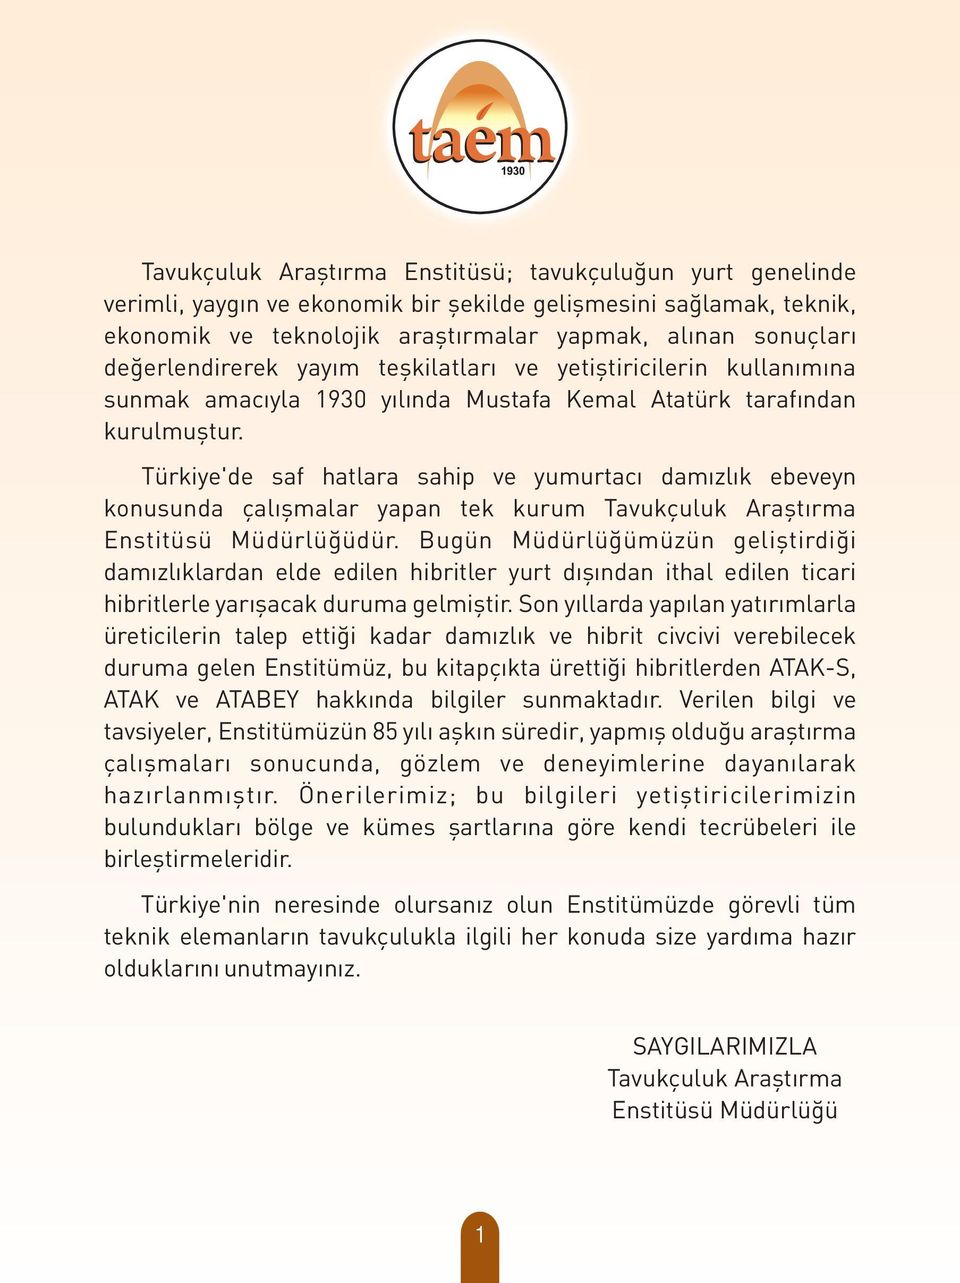 Türkiye'de saf hatlara sahip ve yumurtacý damýzlýk ebeveyn konusunda çalýþmalar yapan tek kurum Tavukçuluk Araþtýrma Enstitüsü Müdürlüðüdür.